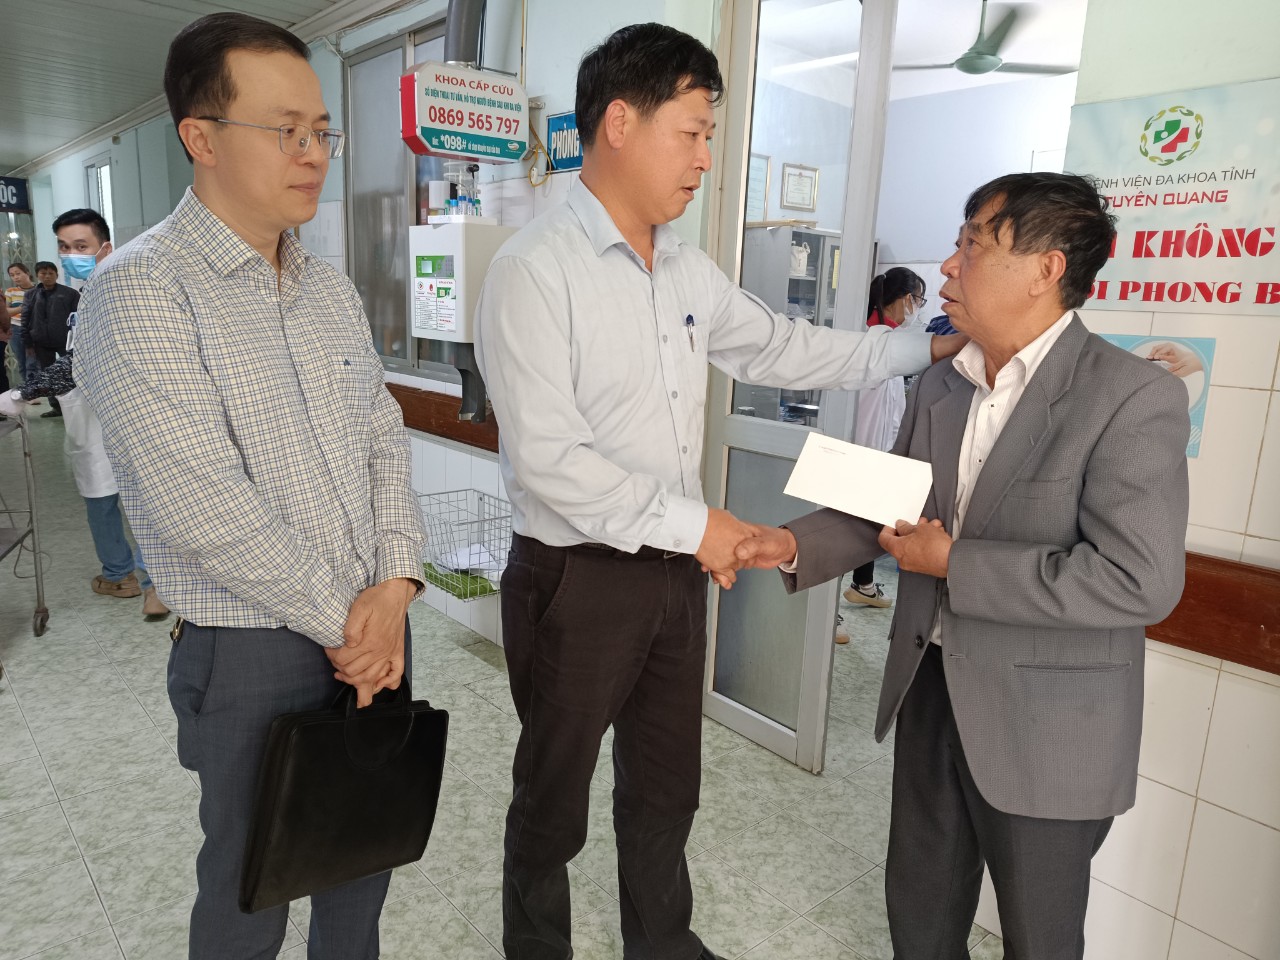 Đại diện Ban An toàn giao thông tỉnh Hà Giang thăm hỏi động viên người nhà nạn nhân.